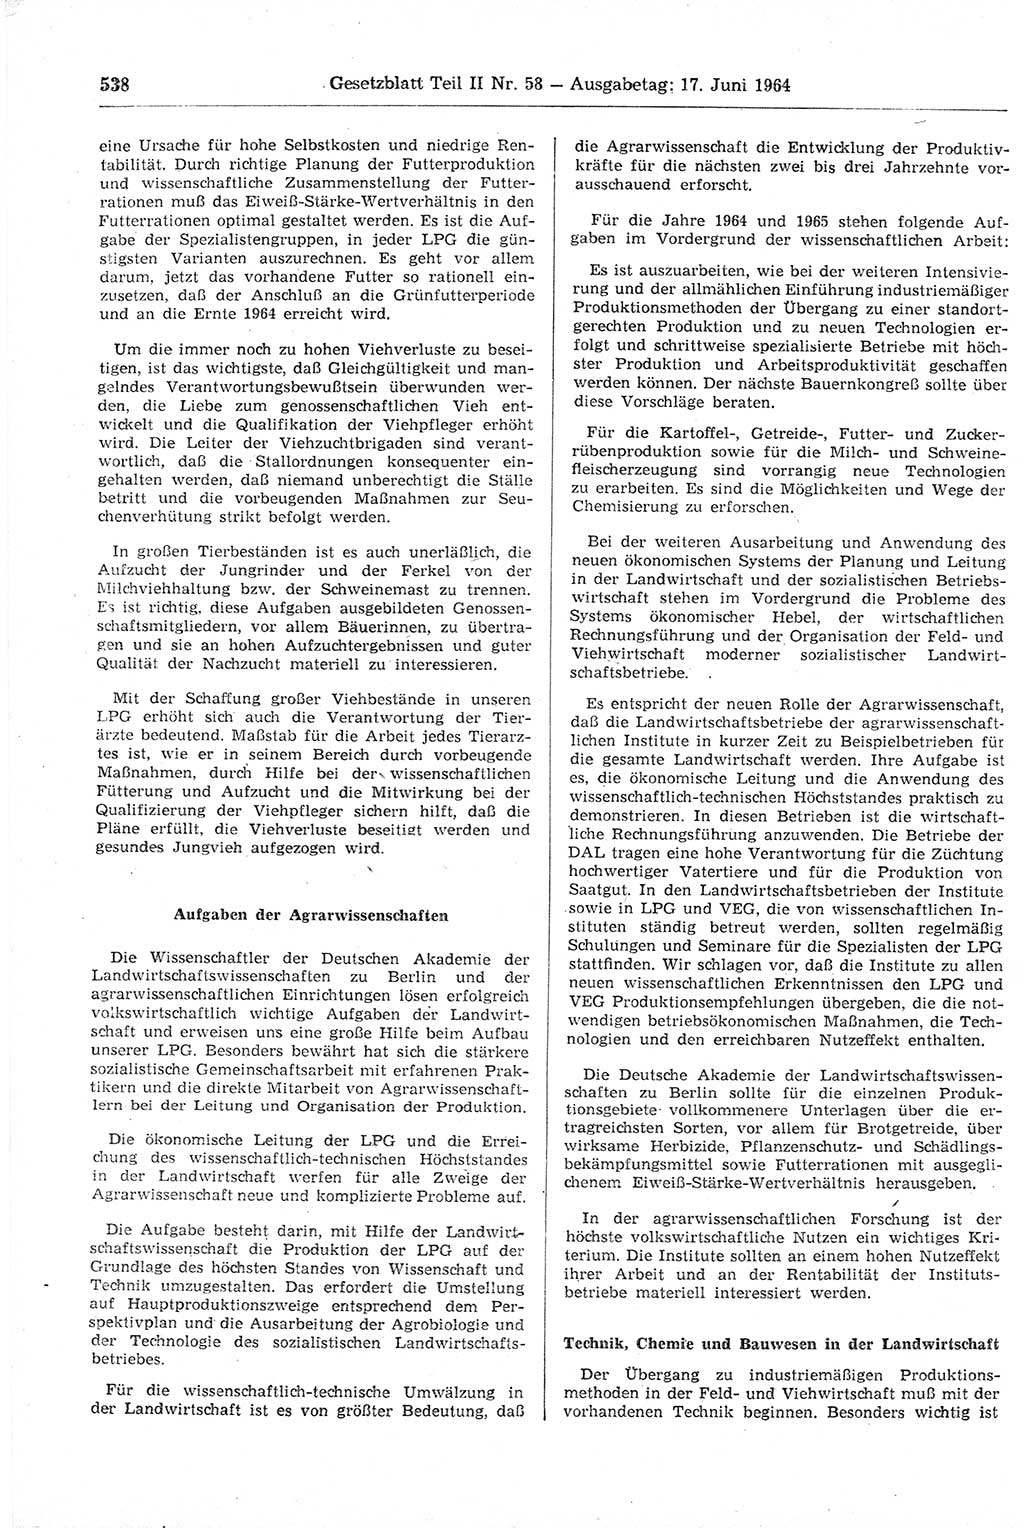 Gesetzblatt (GBl.) der Deutschen Demokratischen Republik (DDR) Teil ⅠⅠ 1964, Seite 538 (GBl. DDR ⅠⅠ 1964, S. 538)